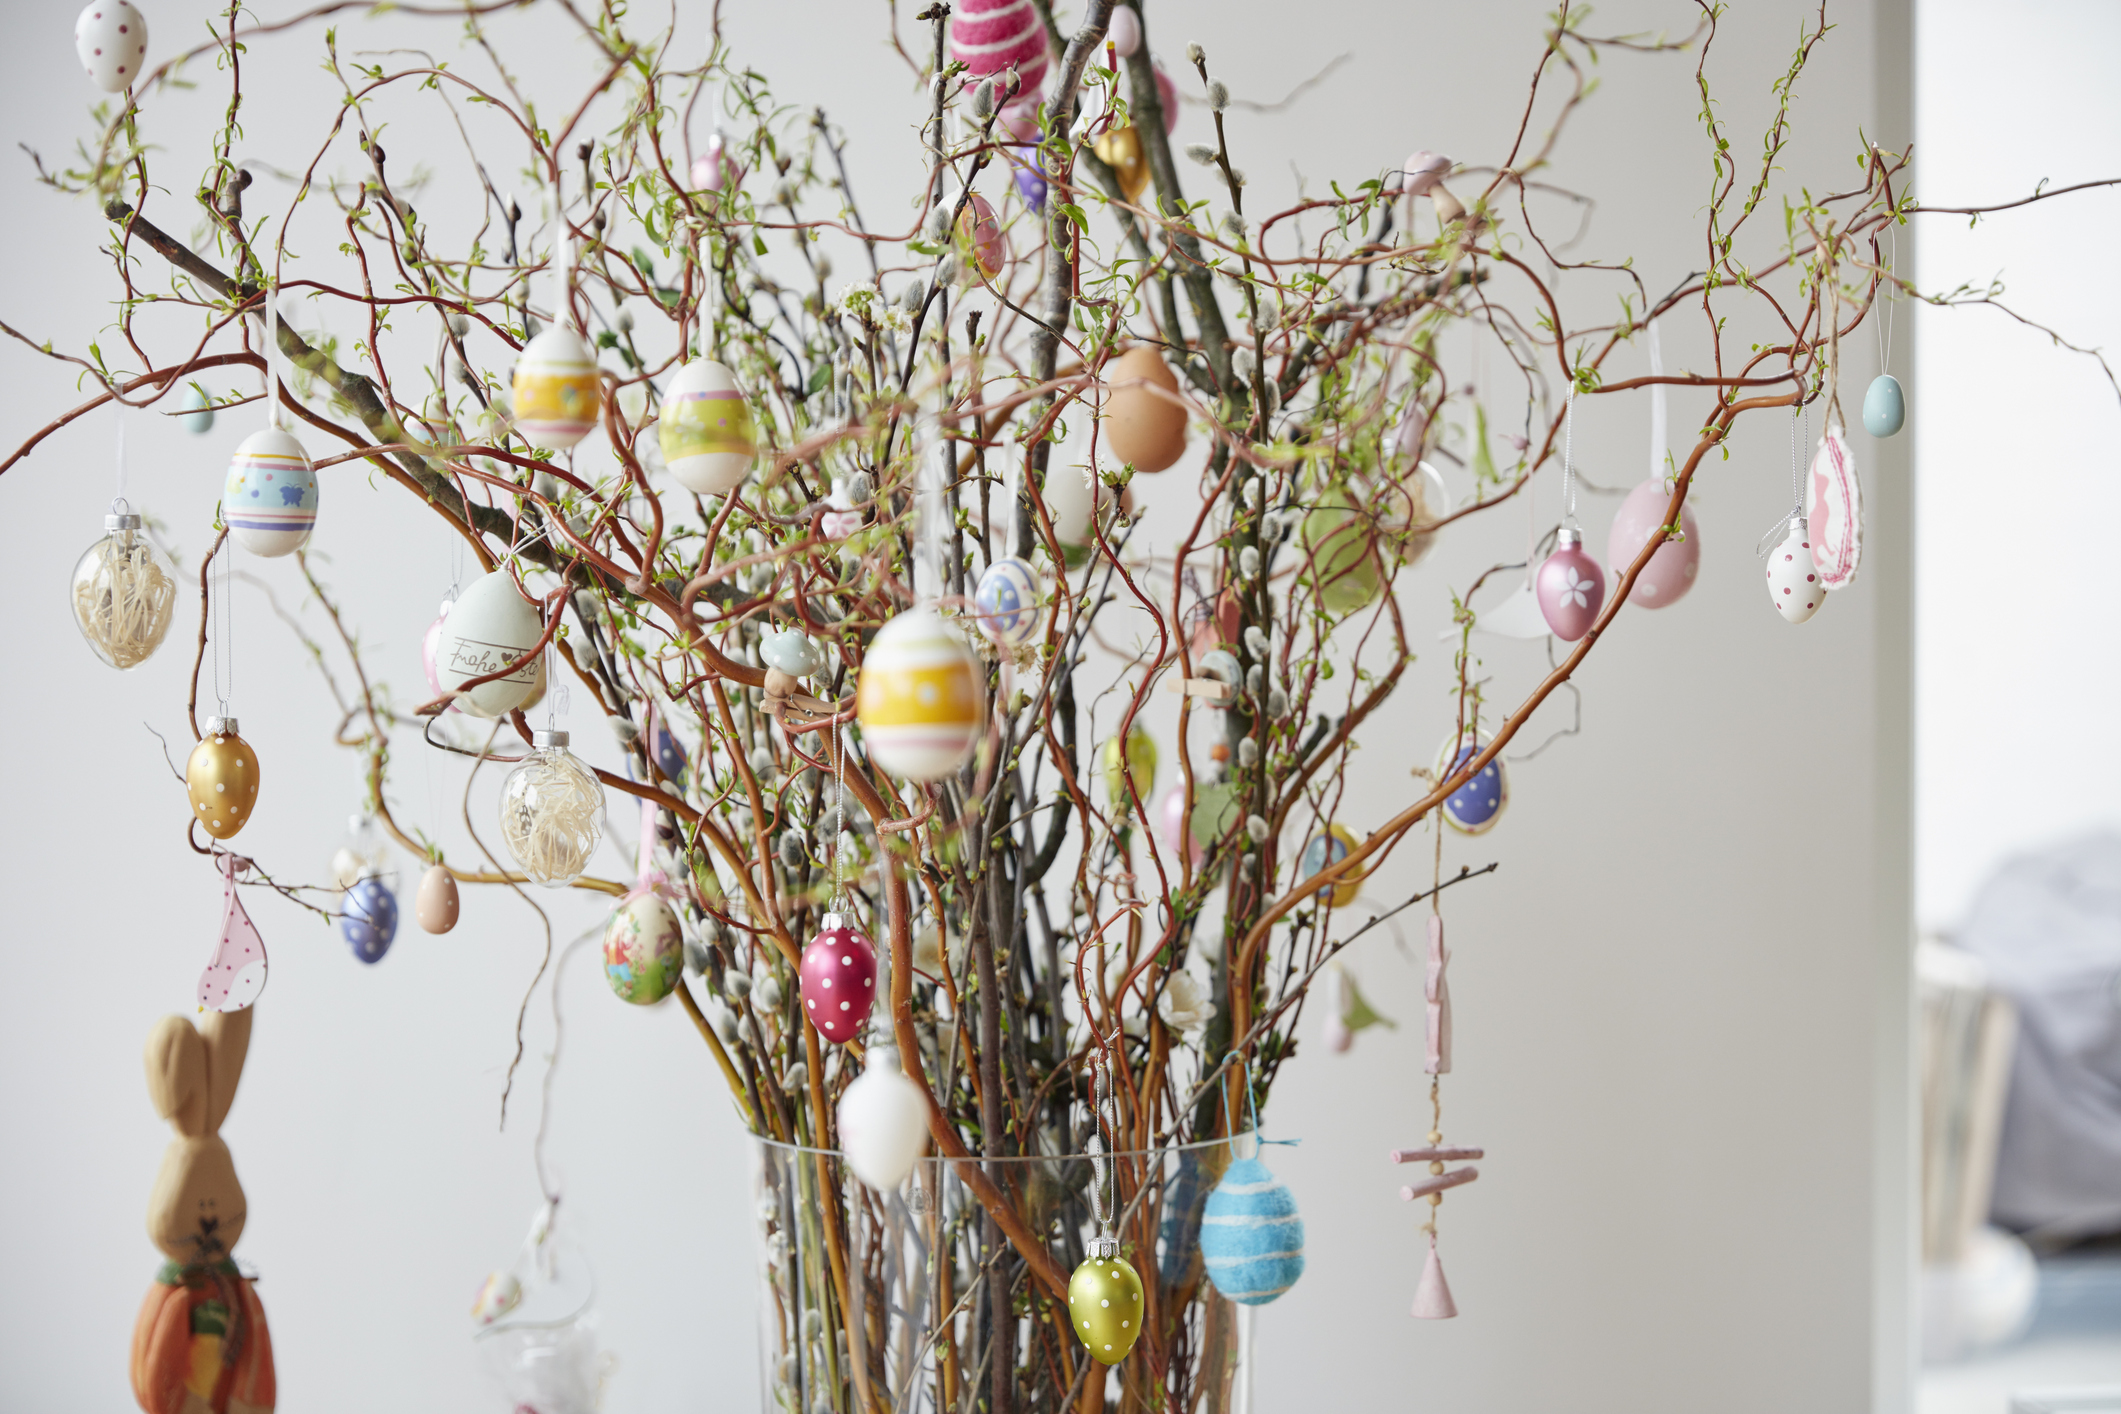 Ez az 5 különleges húsvéti tojásfa csodaszép dísze lesz az otthonodnak